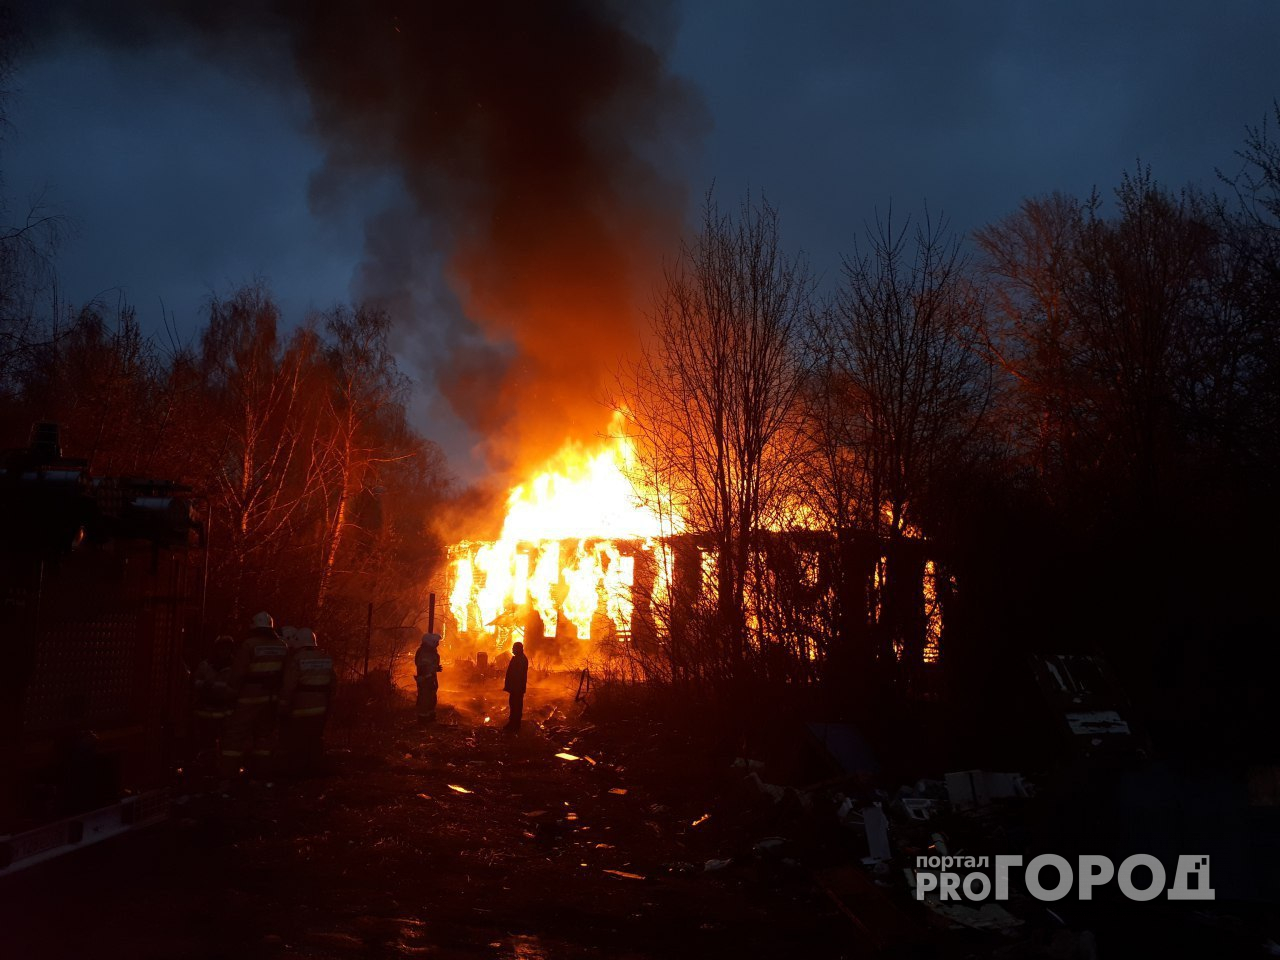 Страшный пожар в Ярославле: в районе "Метро" полыхает многоквартирный дом. Видео